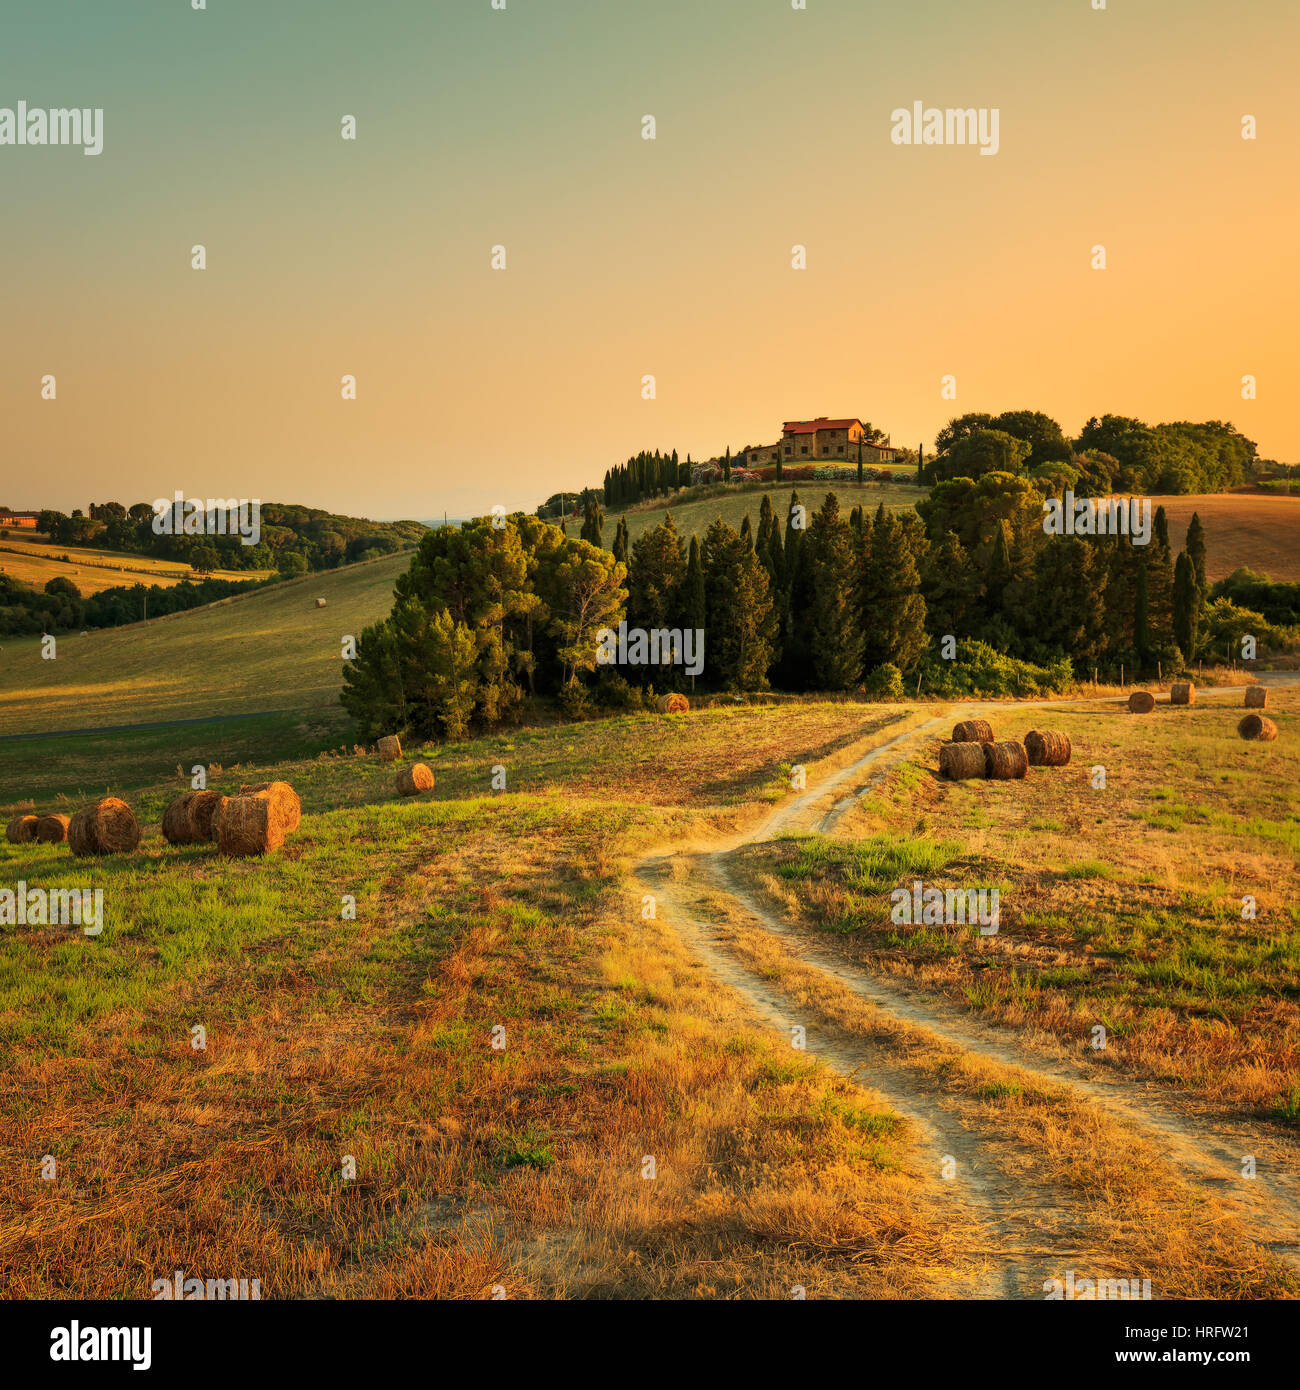 Toskana, Ackerland und Zypressen und weiße Straße, Landschaft bei Sonnenuntergang. Siena, Italien, Europa. Stockfoto